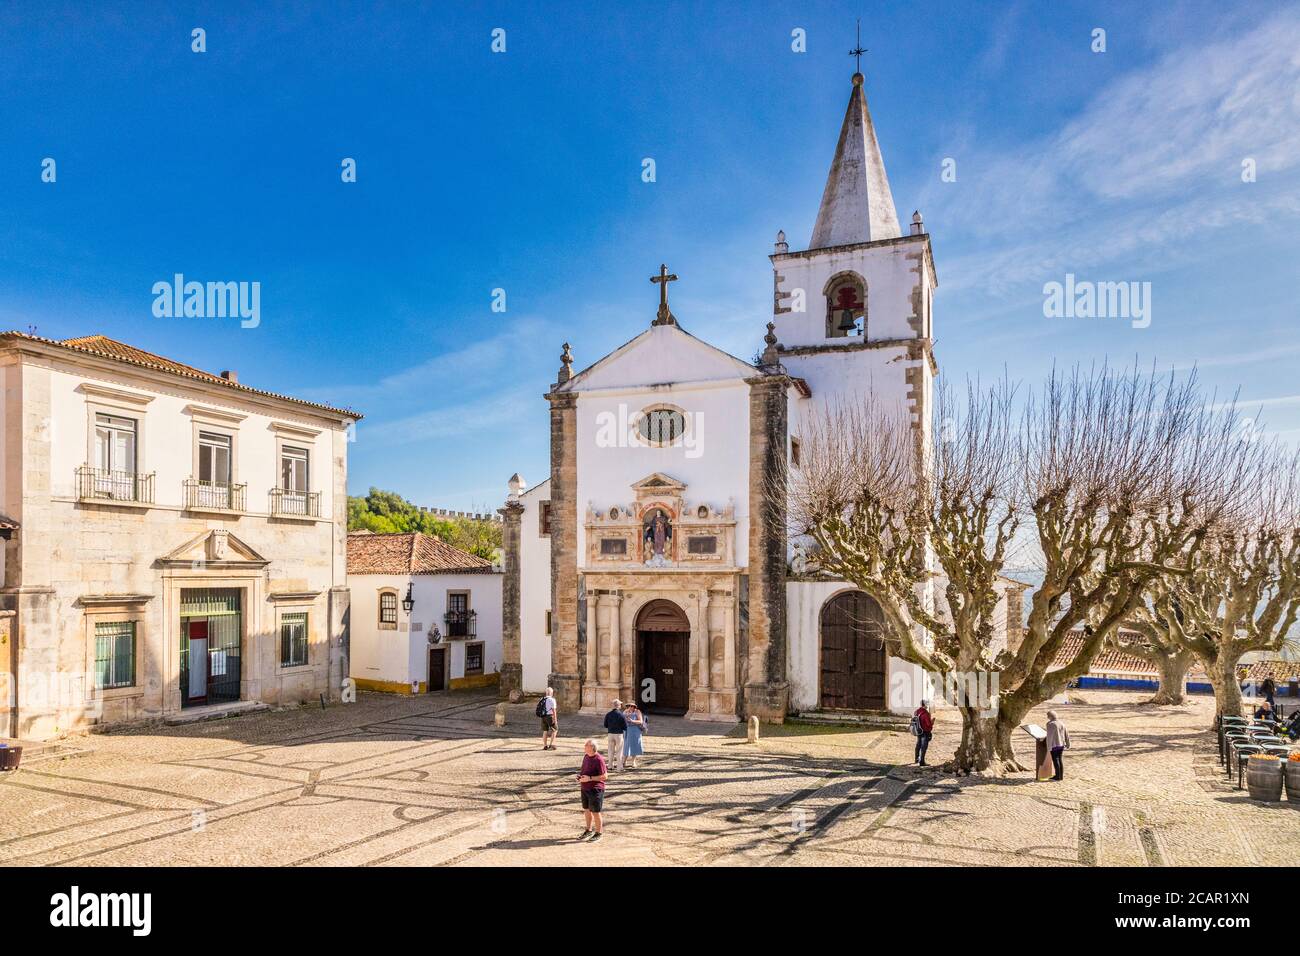 11 de marzo de 2020: Obidos, Portugal - la plaza principal de la ciudad amurallada de Obidos, con la Igreja de Santa María, la Iglesia de Santa María. Foto de stock